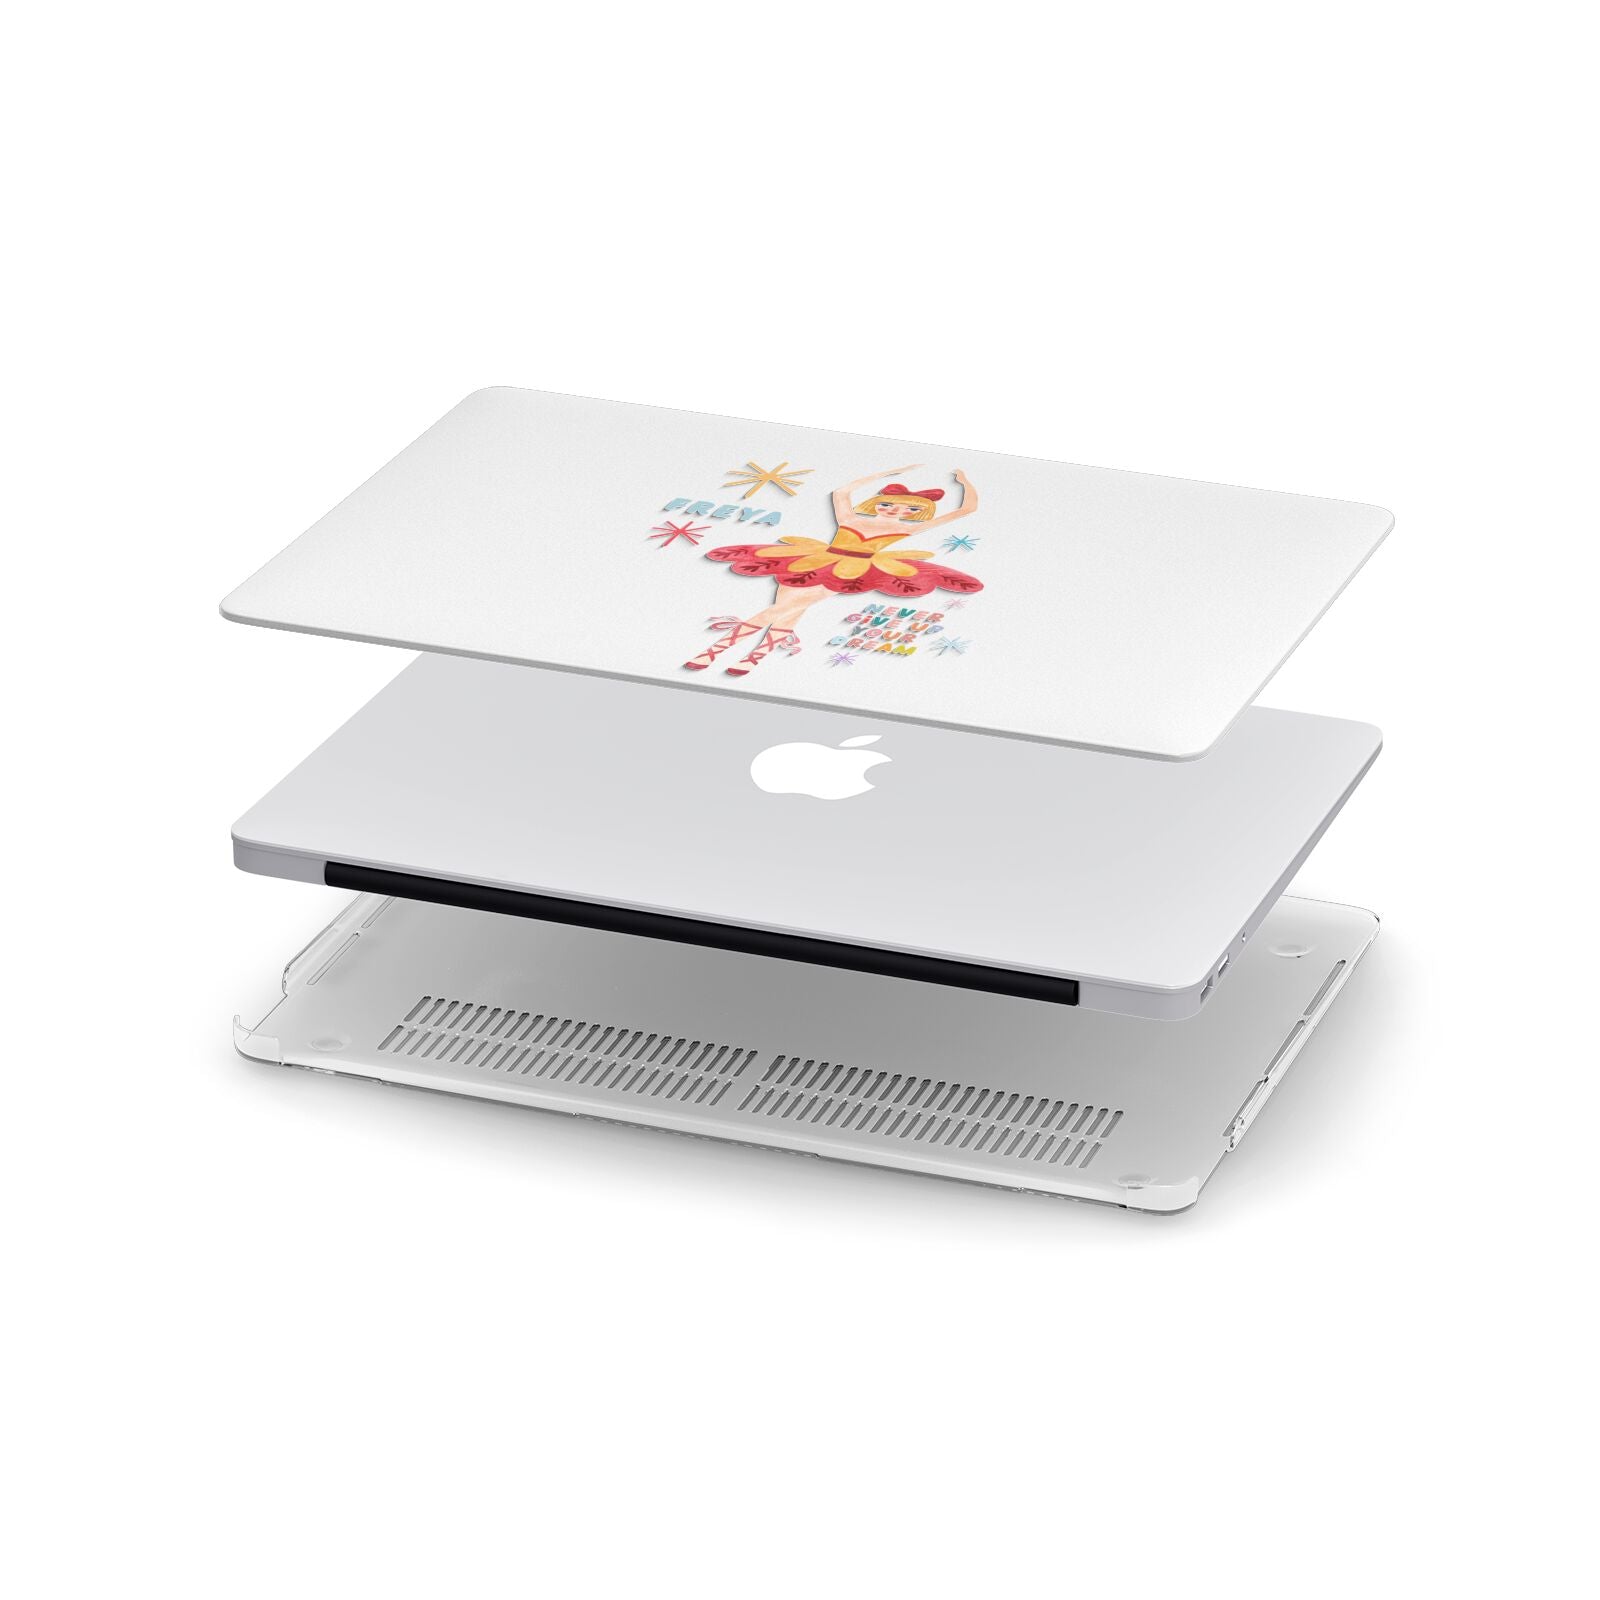 Sugarplum Nutcracker Personalised Apple MacBook Case in Detail